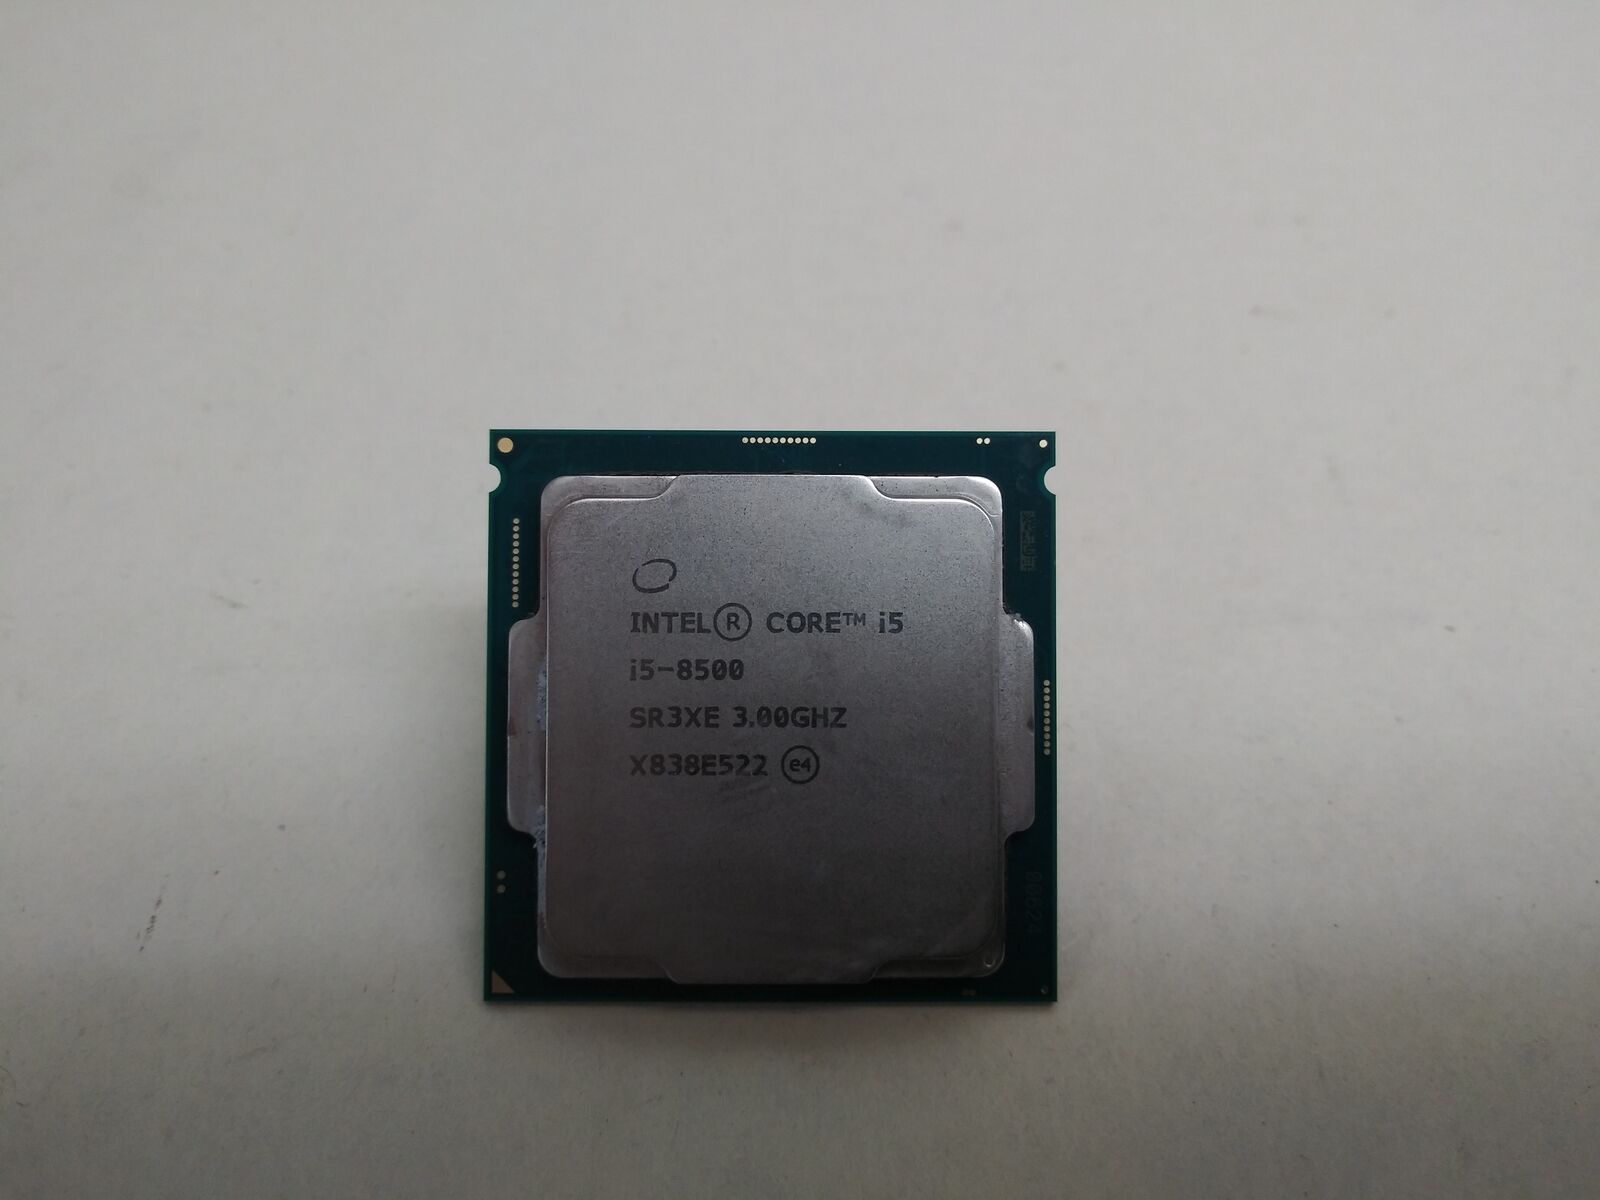 Intel Core i5-8500 3 GHz 8 GT/s LGA 1151 Desktop CPU Processor SR3XE